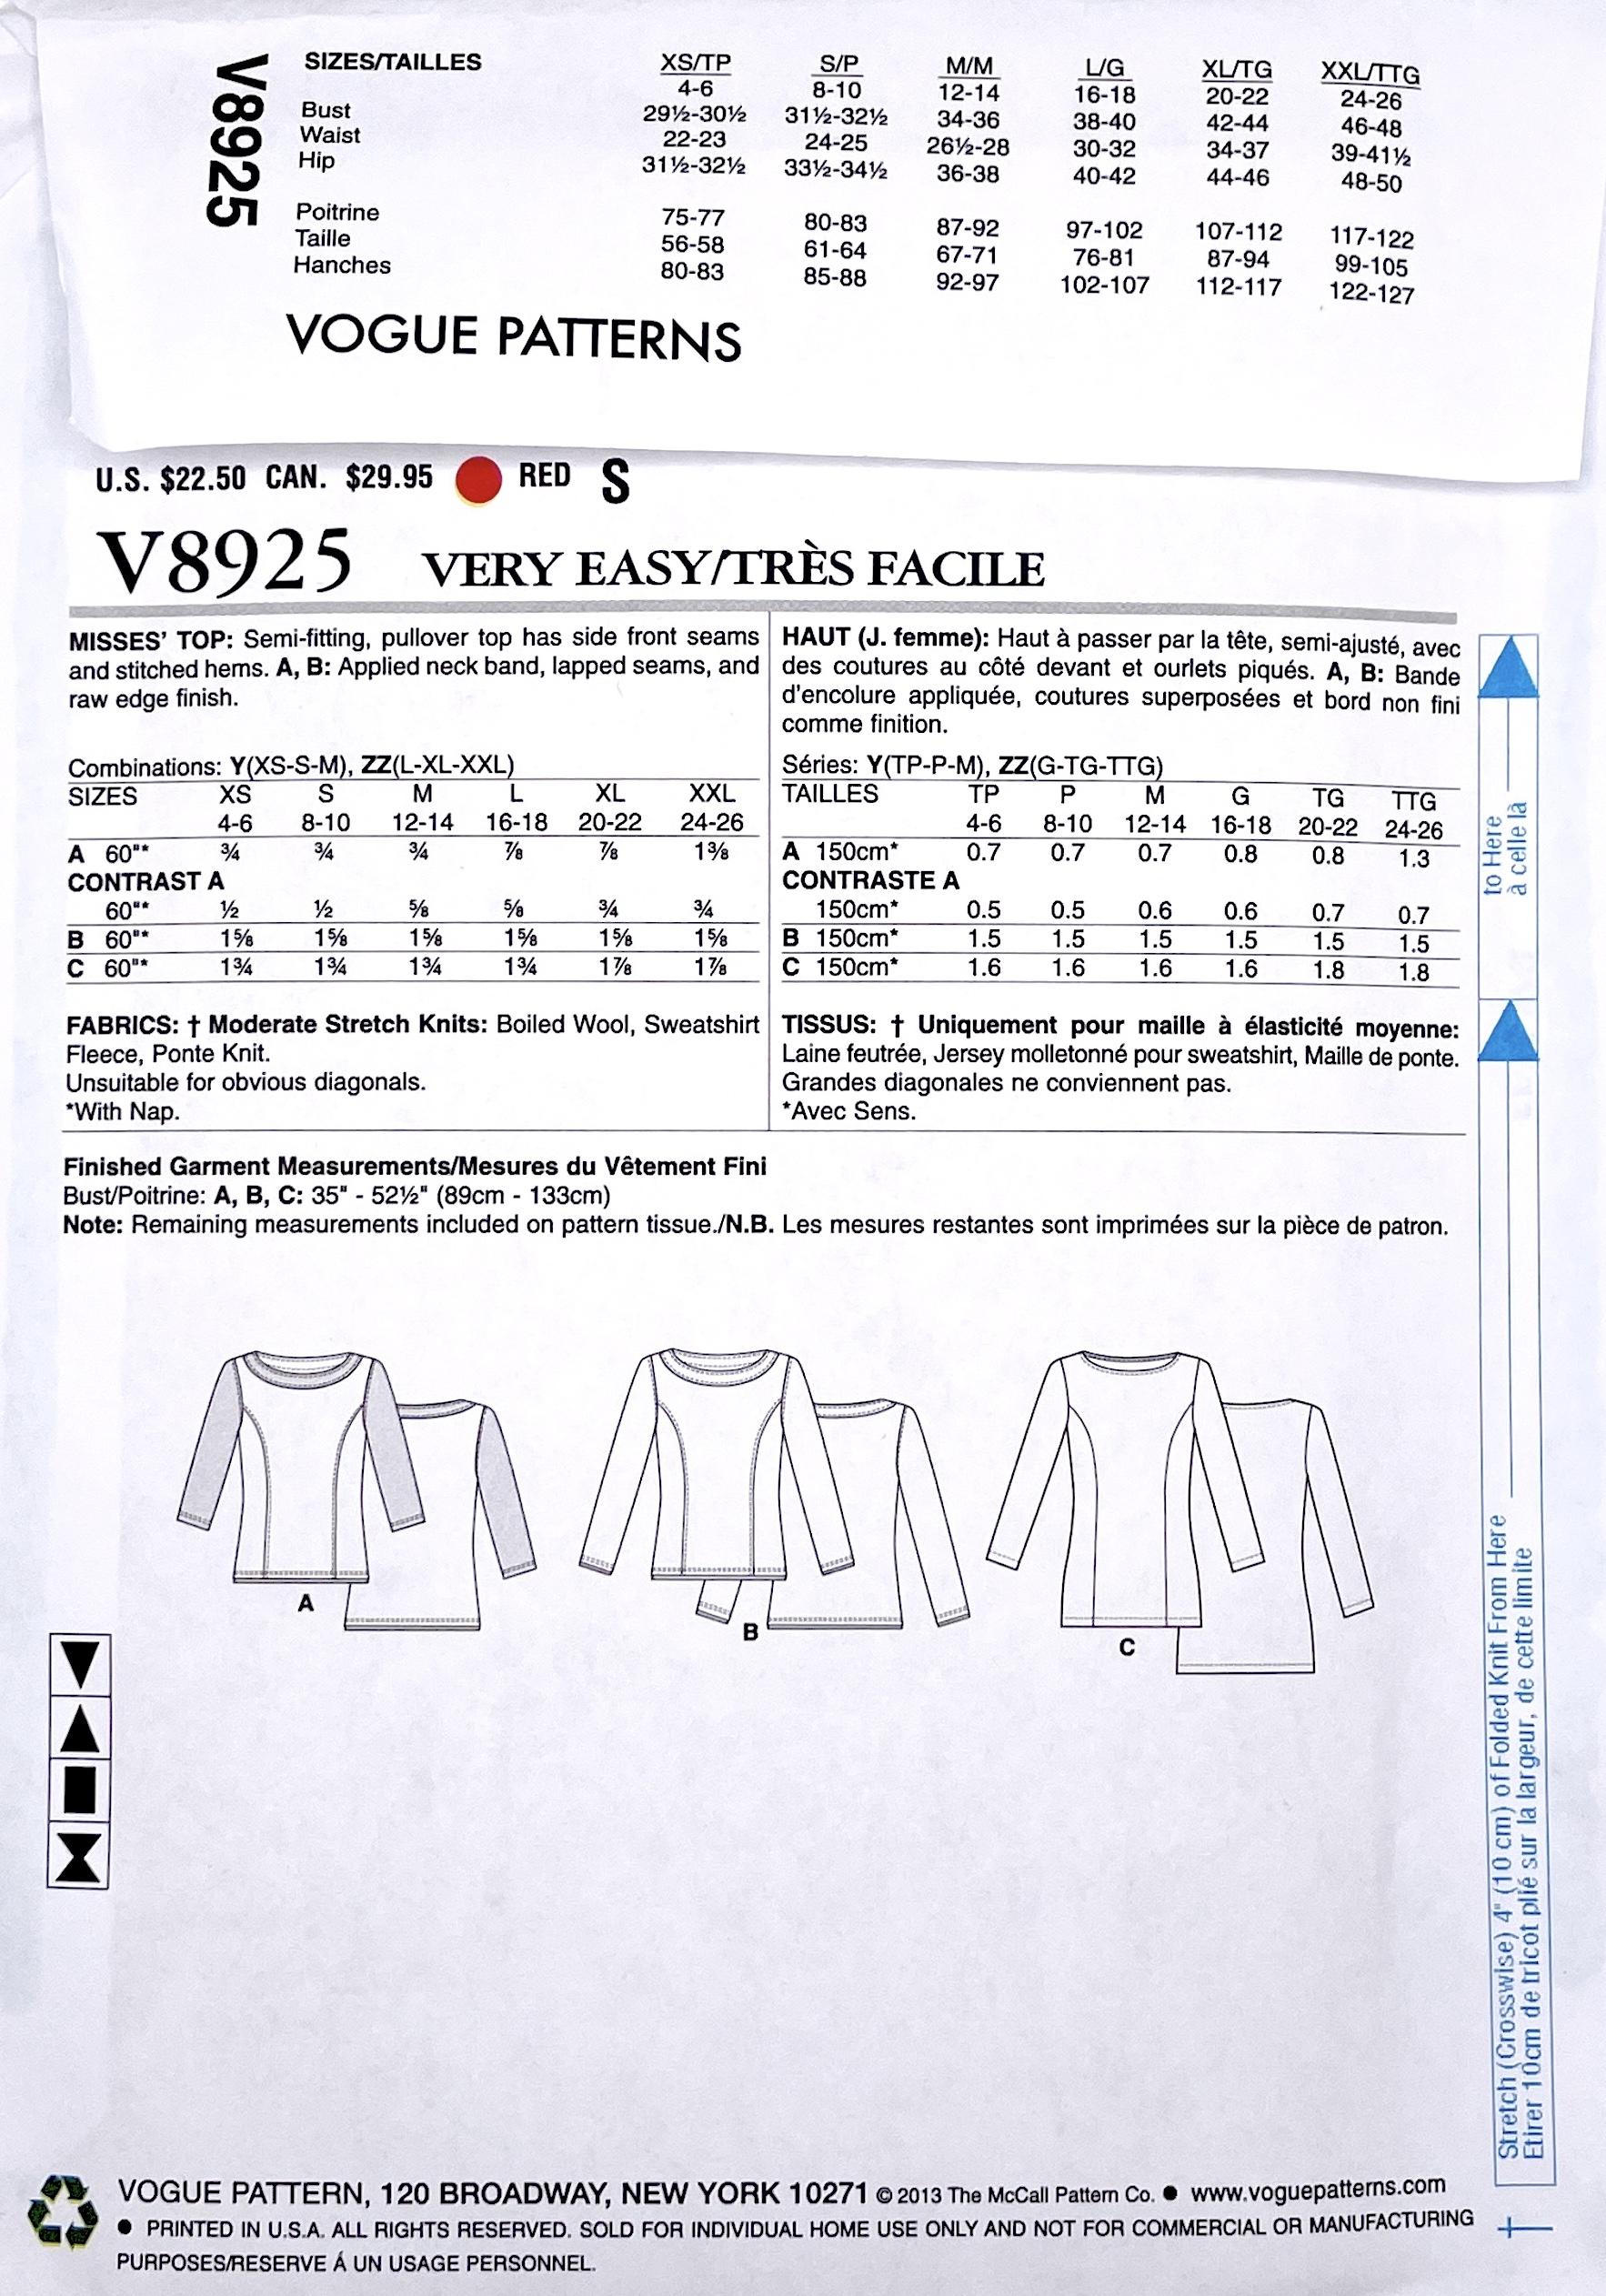 pattern-envelope-vogue-v8925.jpg